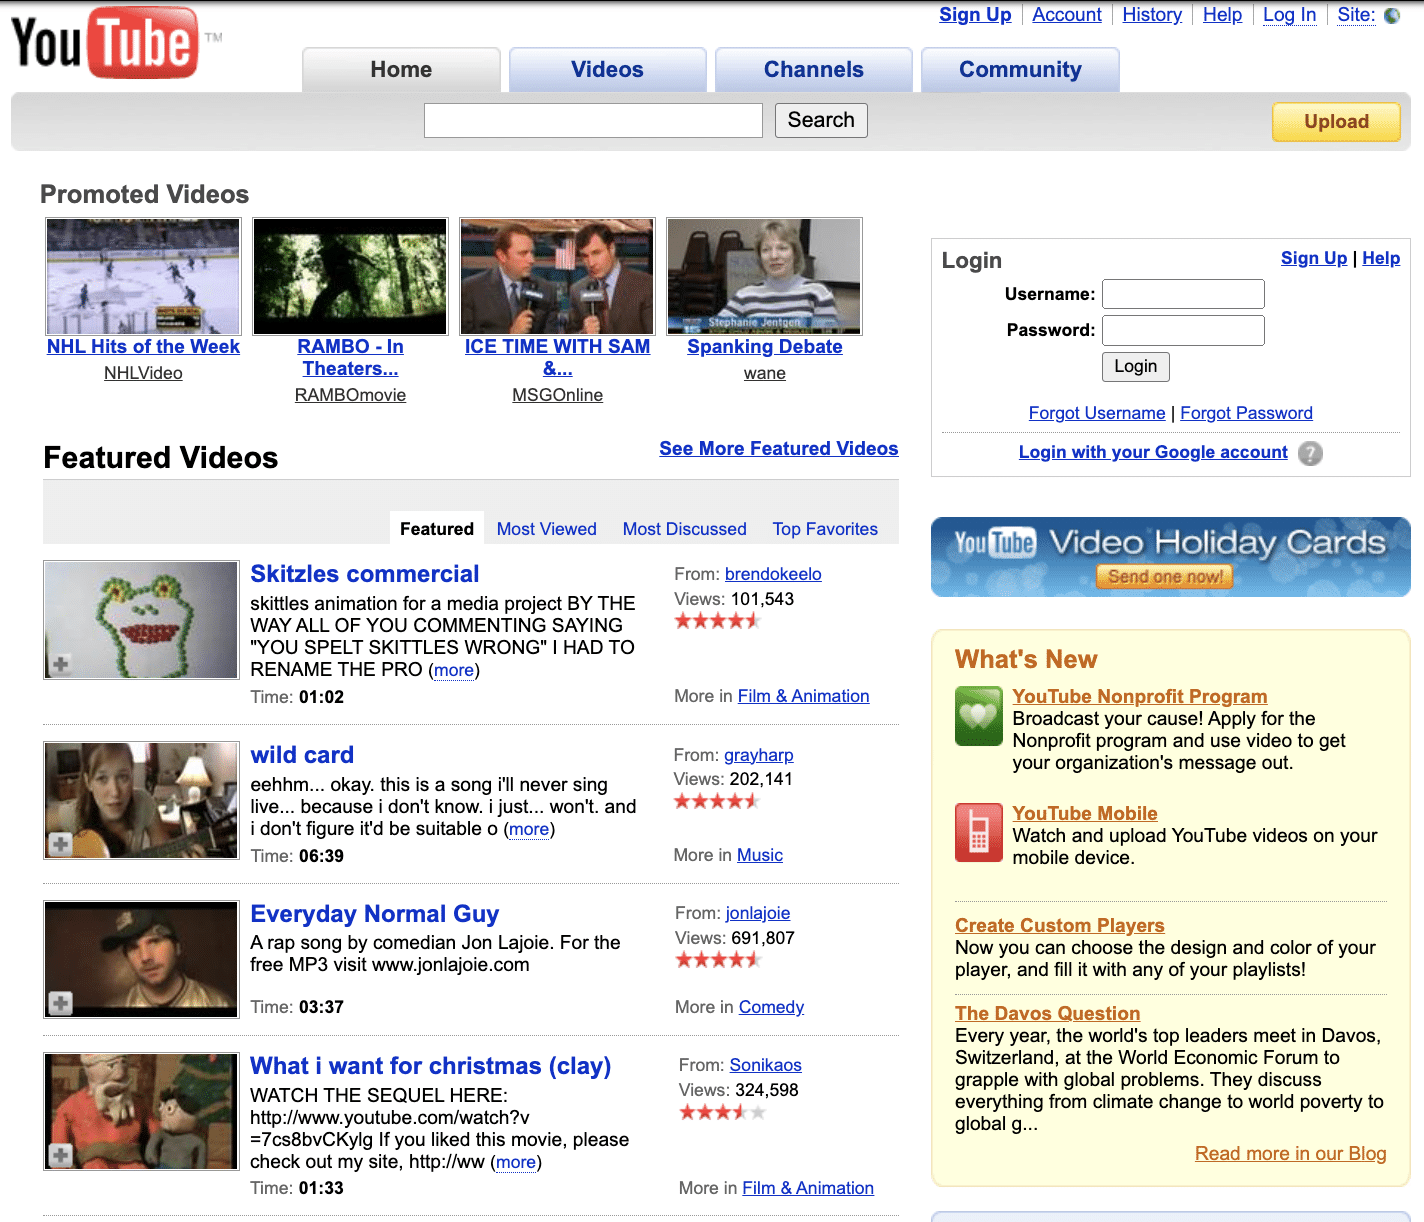 YouTube in 2007